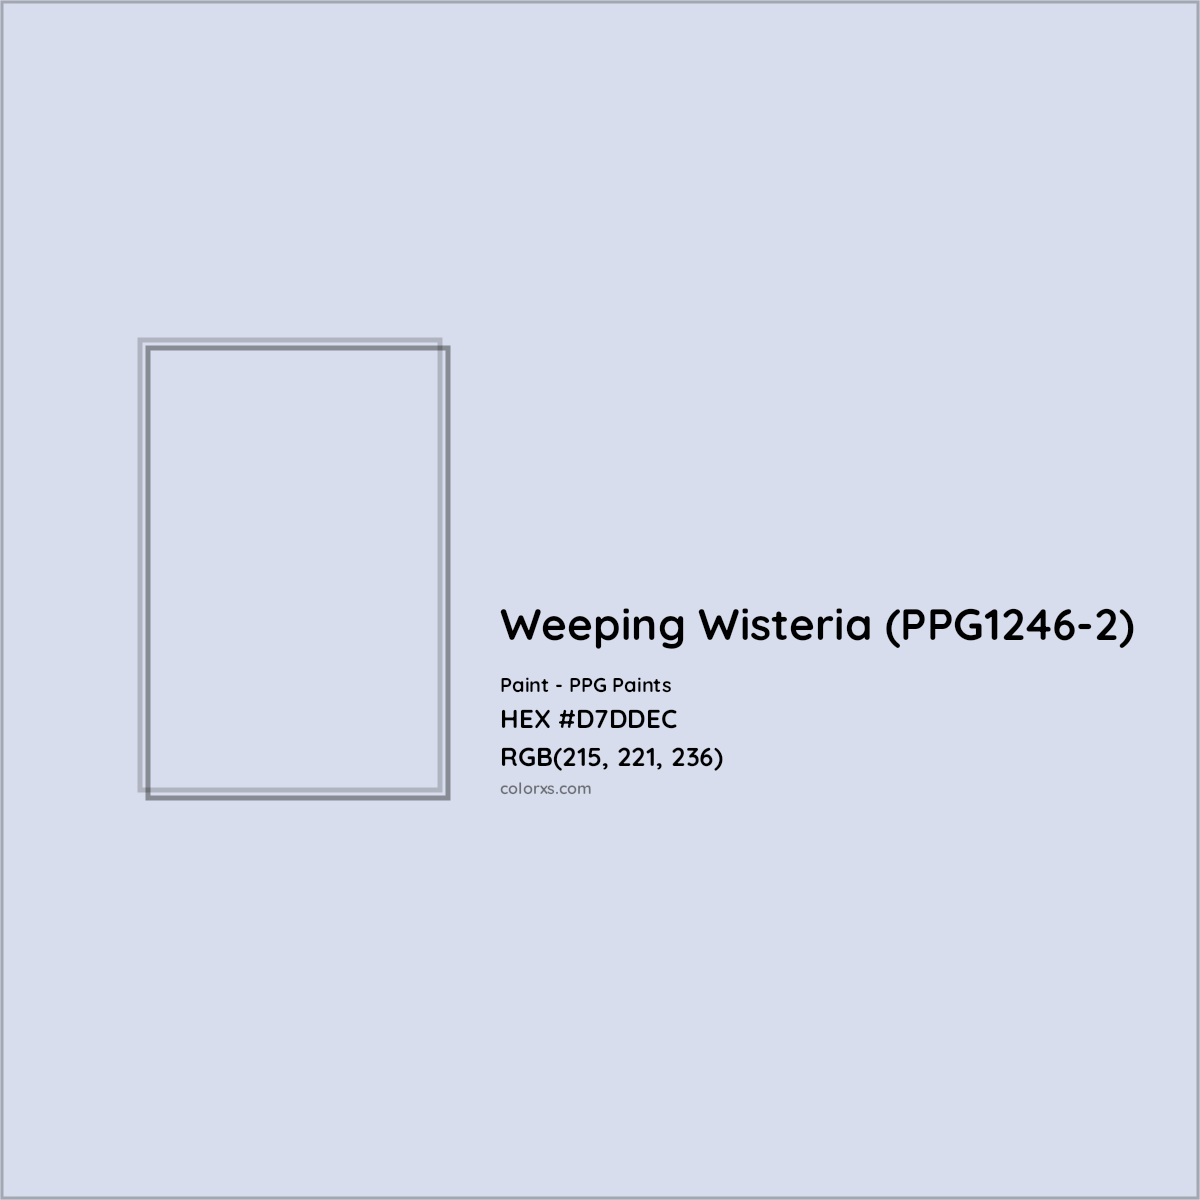 HEX #D7DDEC Weeping Wisteria (PPG1246-2) Paint PPG Paints - Color Code